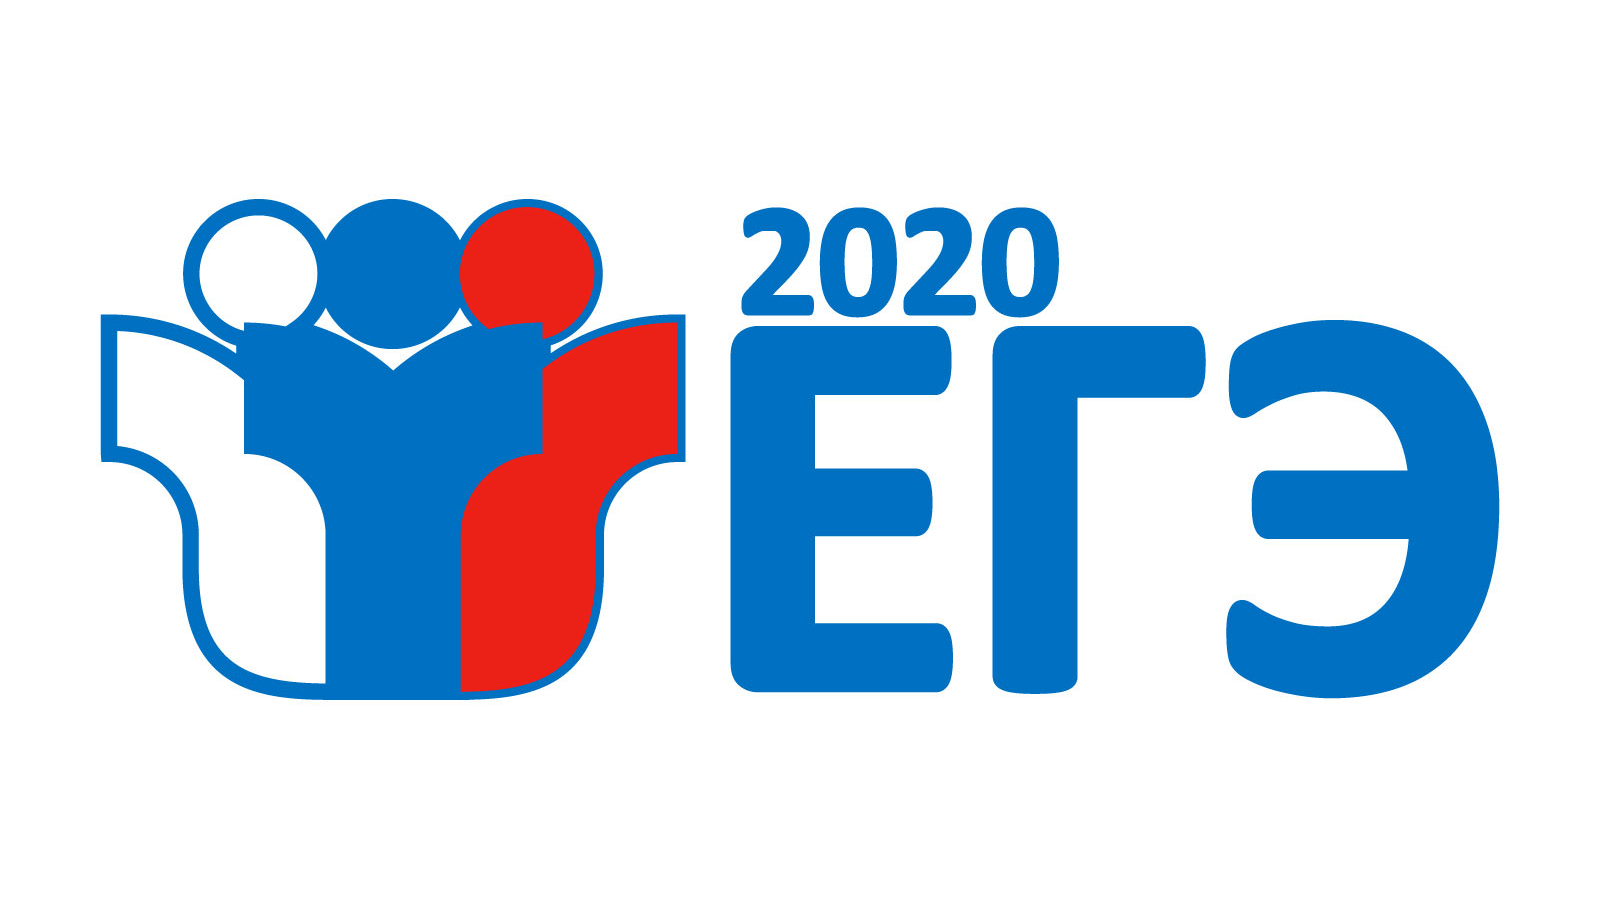 Регистрация на единый государственный экзамен-2020 проходит до 1 февраля 2020 года.